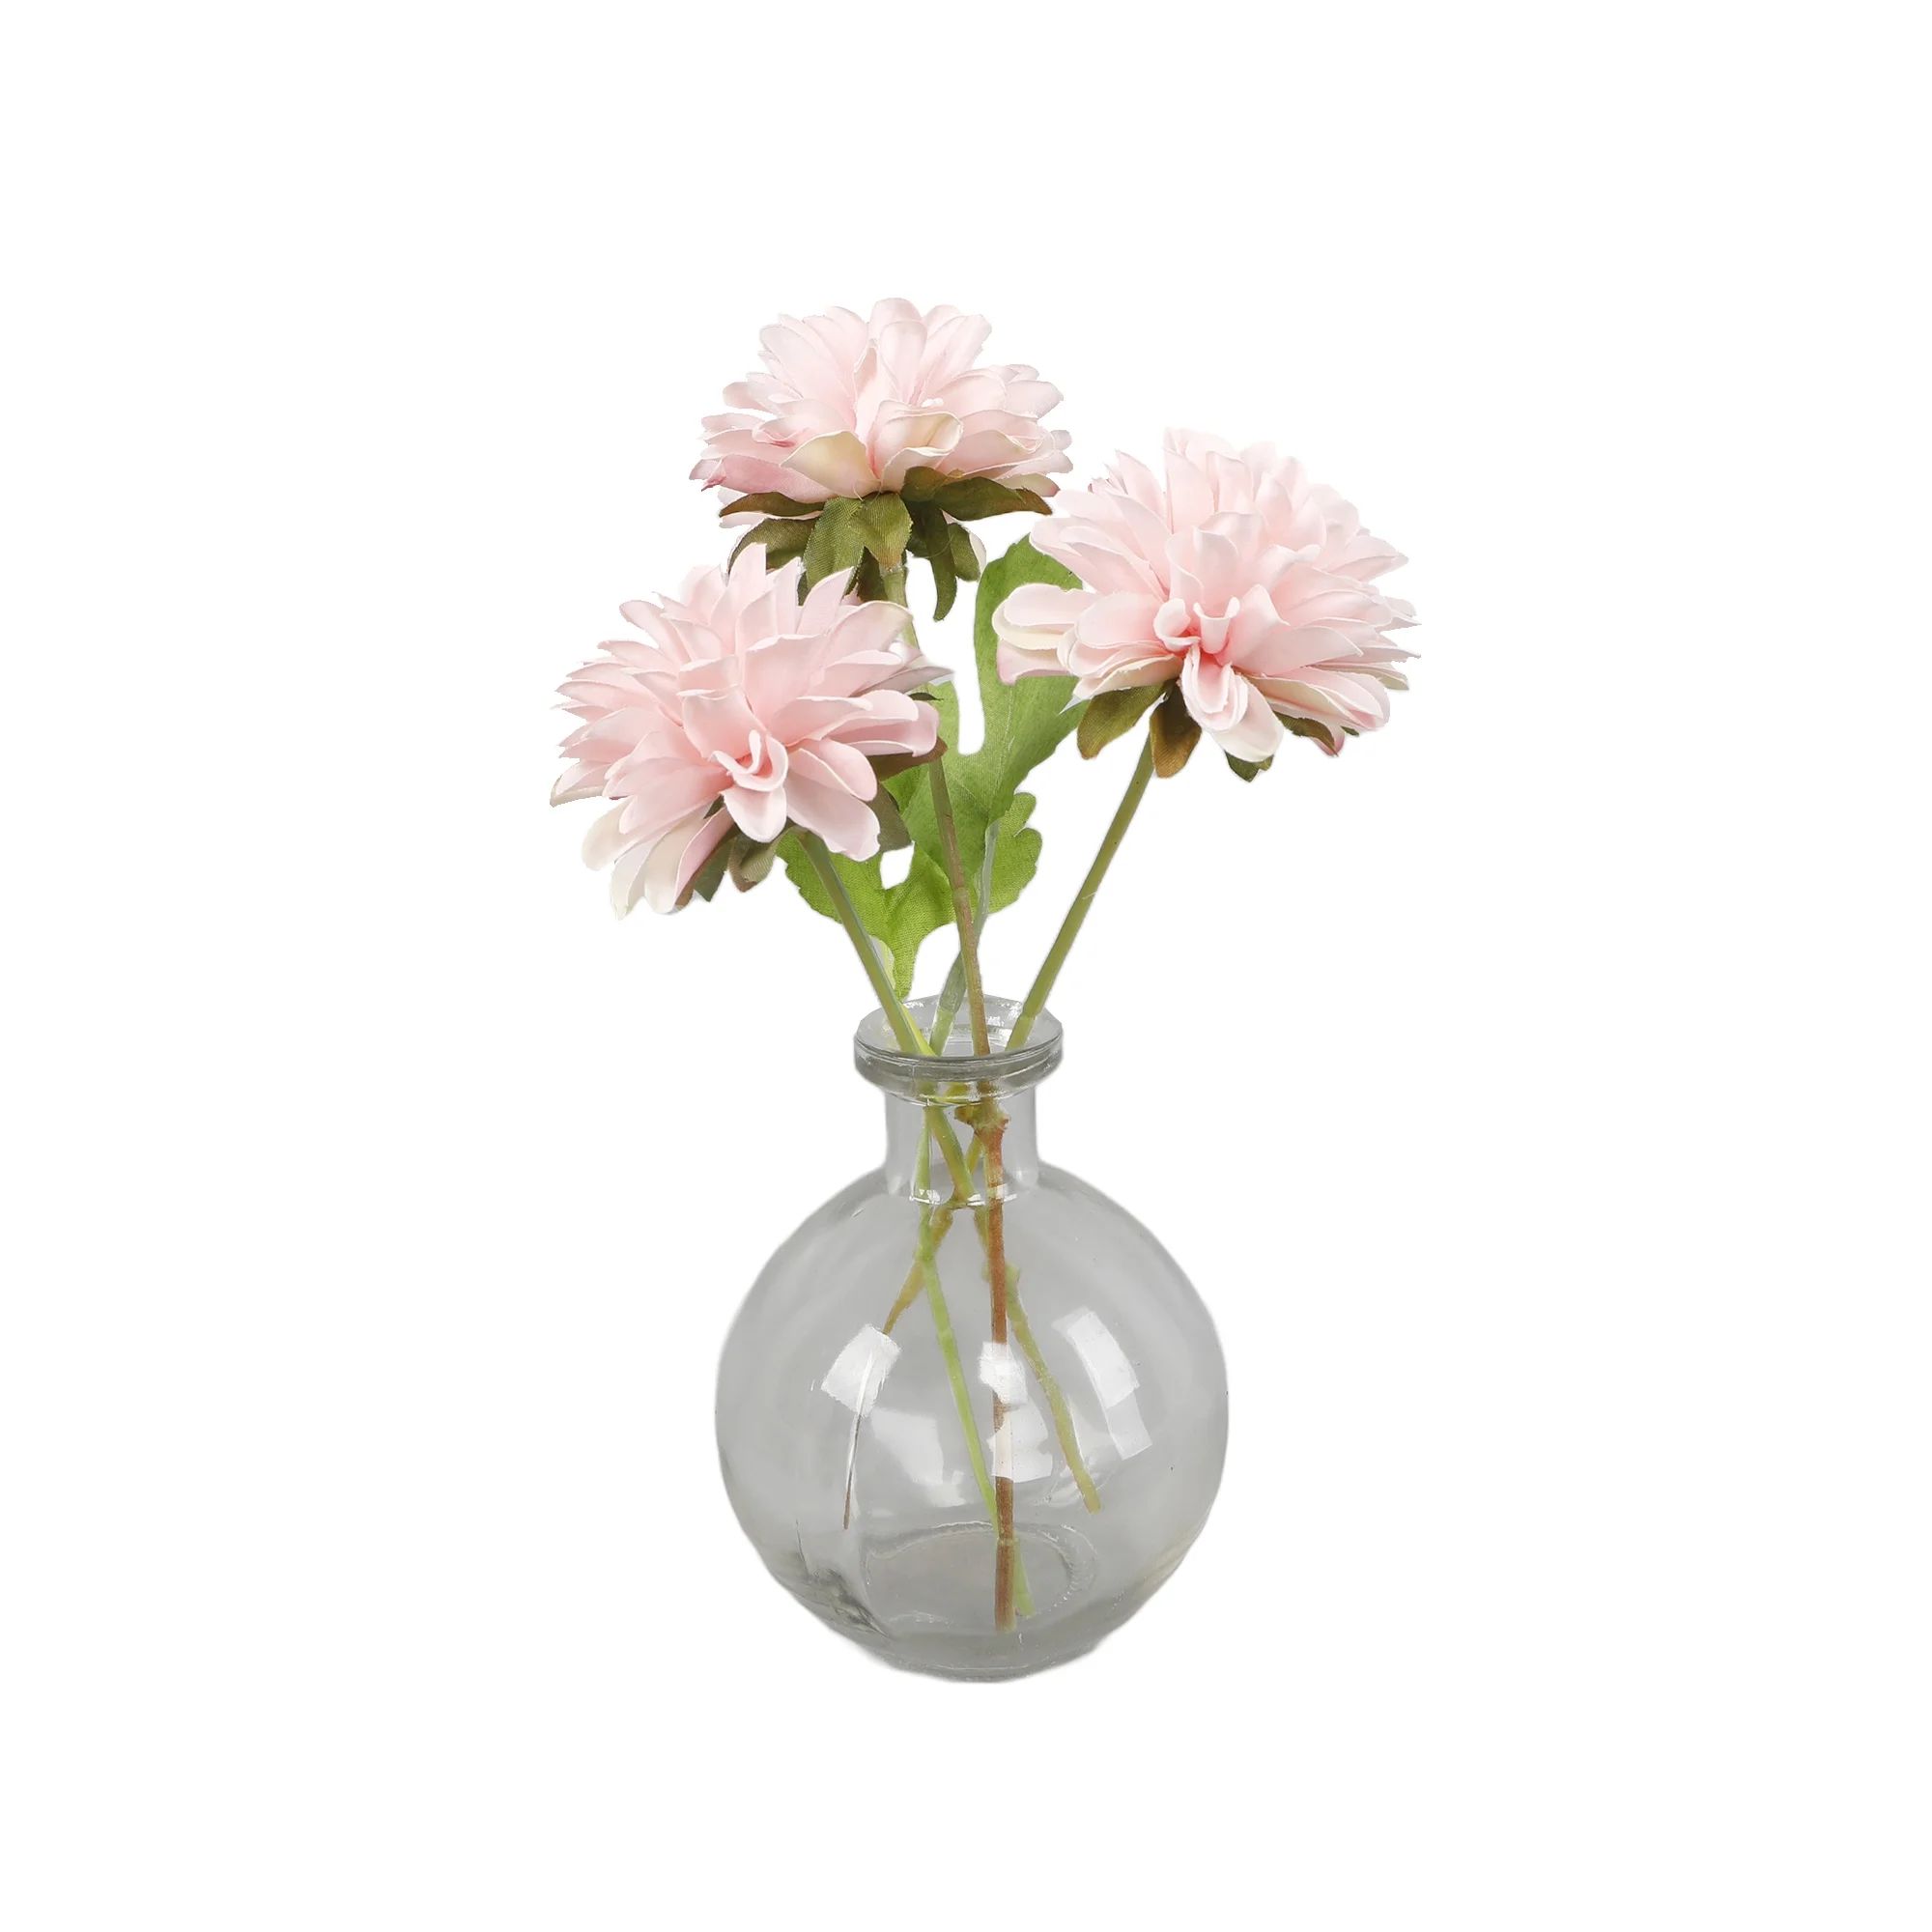 Flora Bunda 9.25 in H x 4.5 in W x 4.5 in D Faux Floral Arrangement in Glass Vase3.5*1.375*4 - Wa... | Walmart (US)